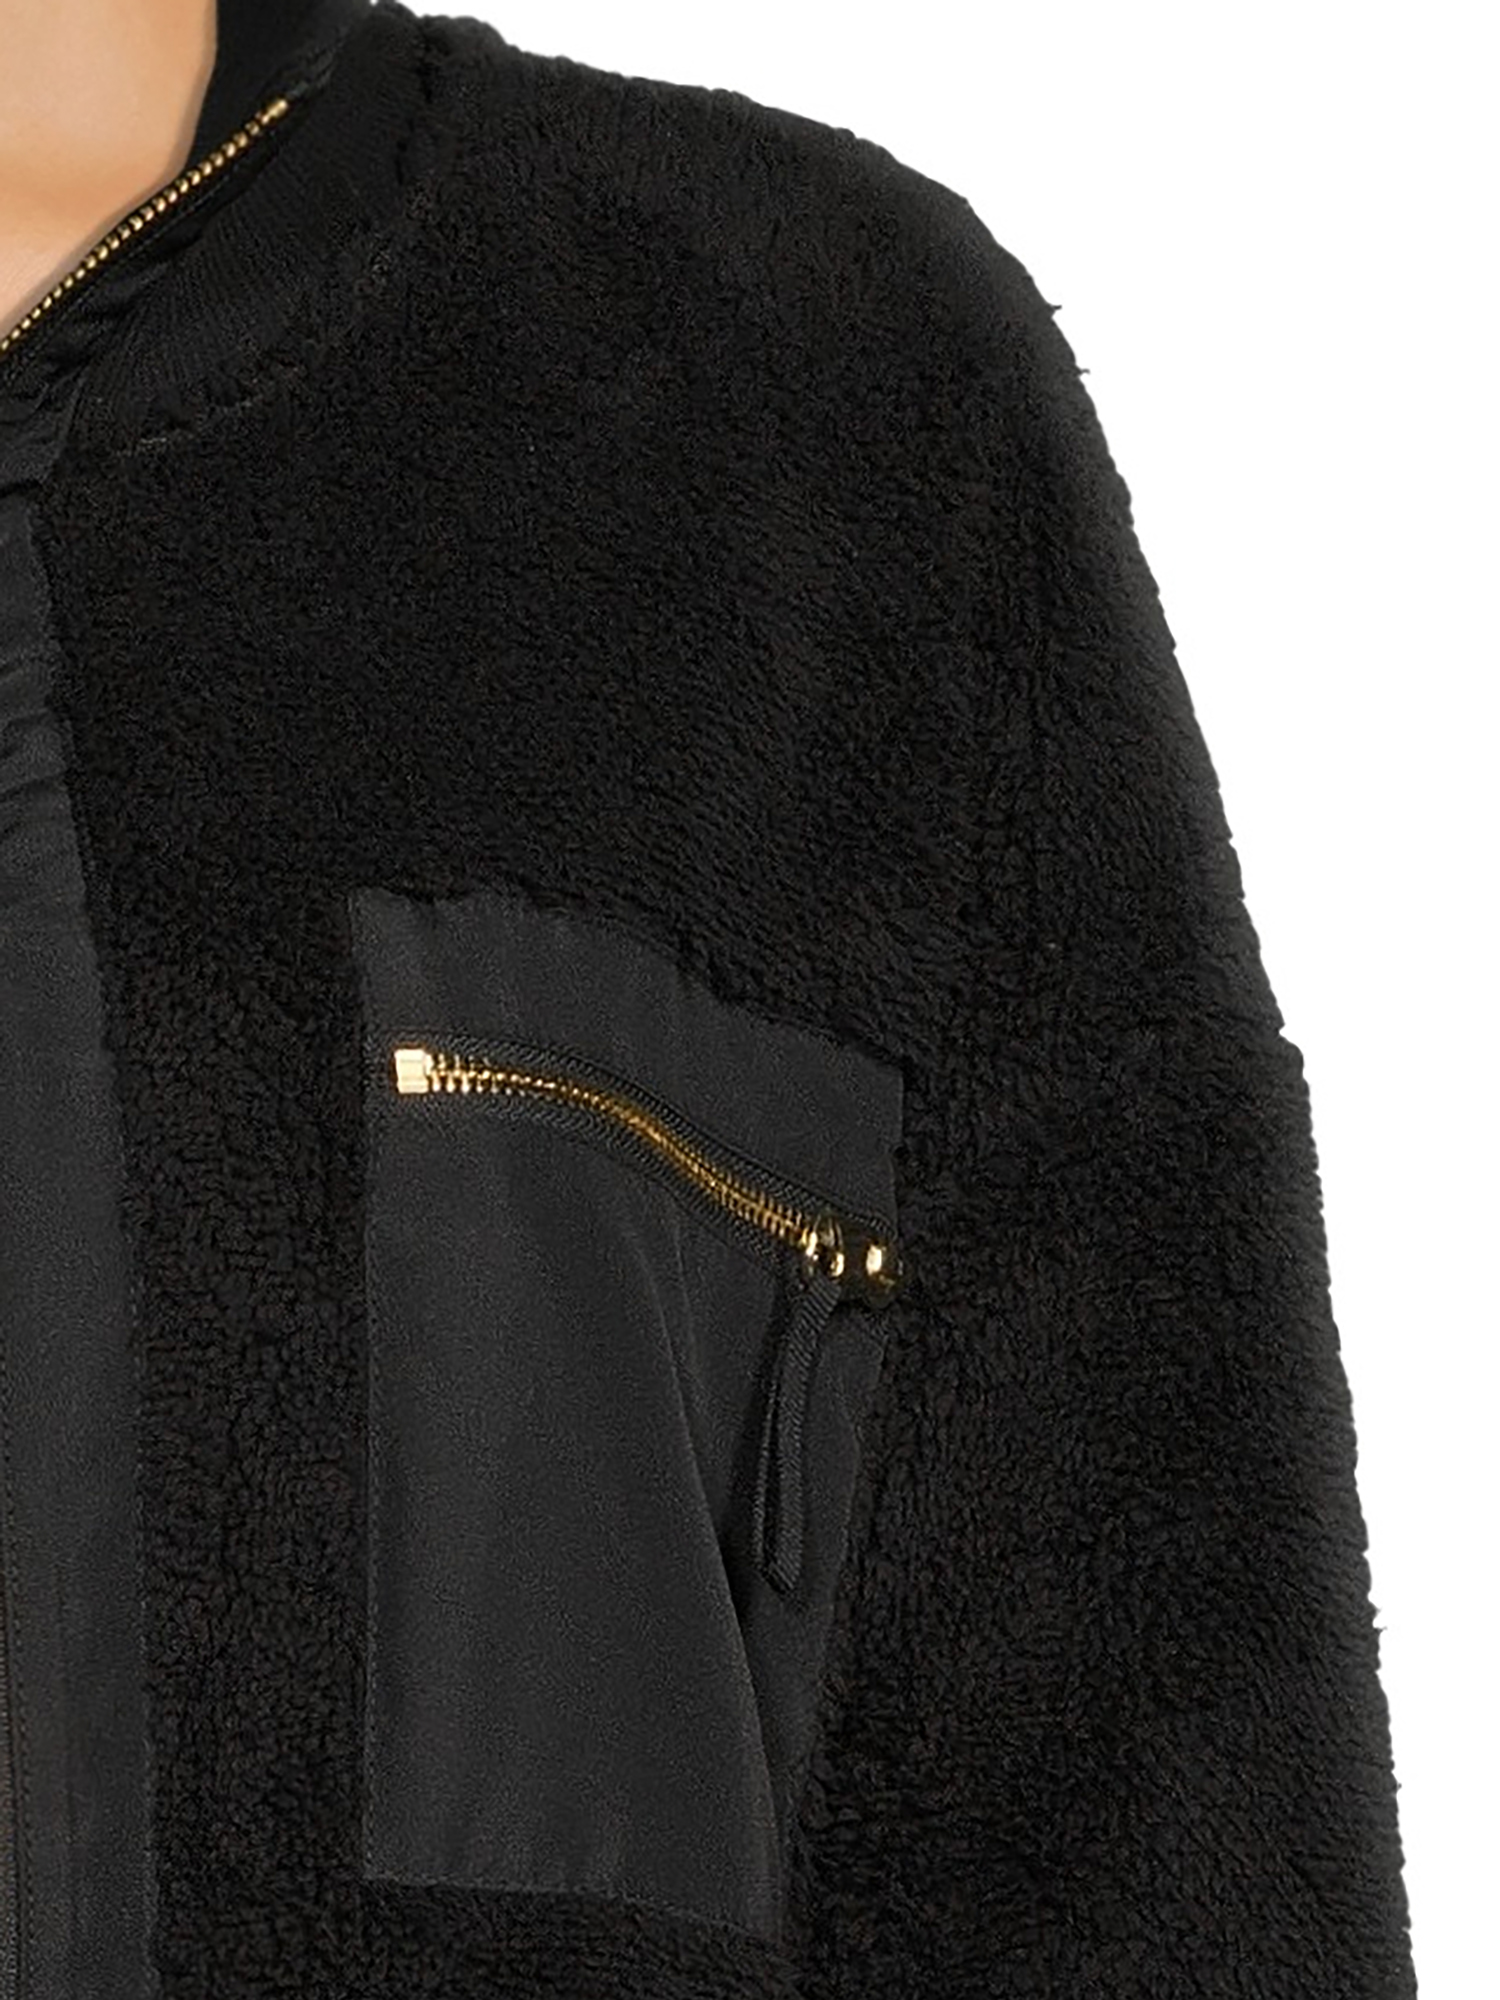 Avia Women’s Faux Sherpa Jacket, up to Size XXXL - Walmart.com